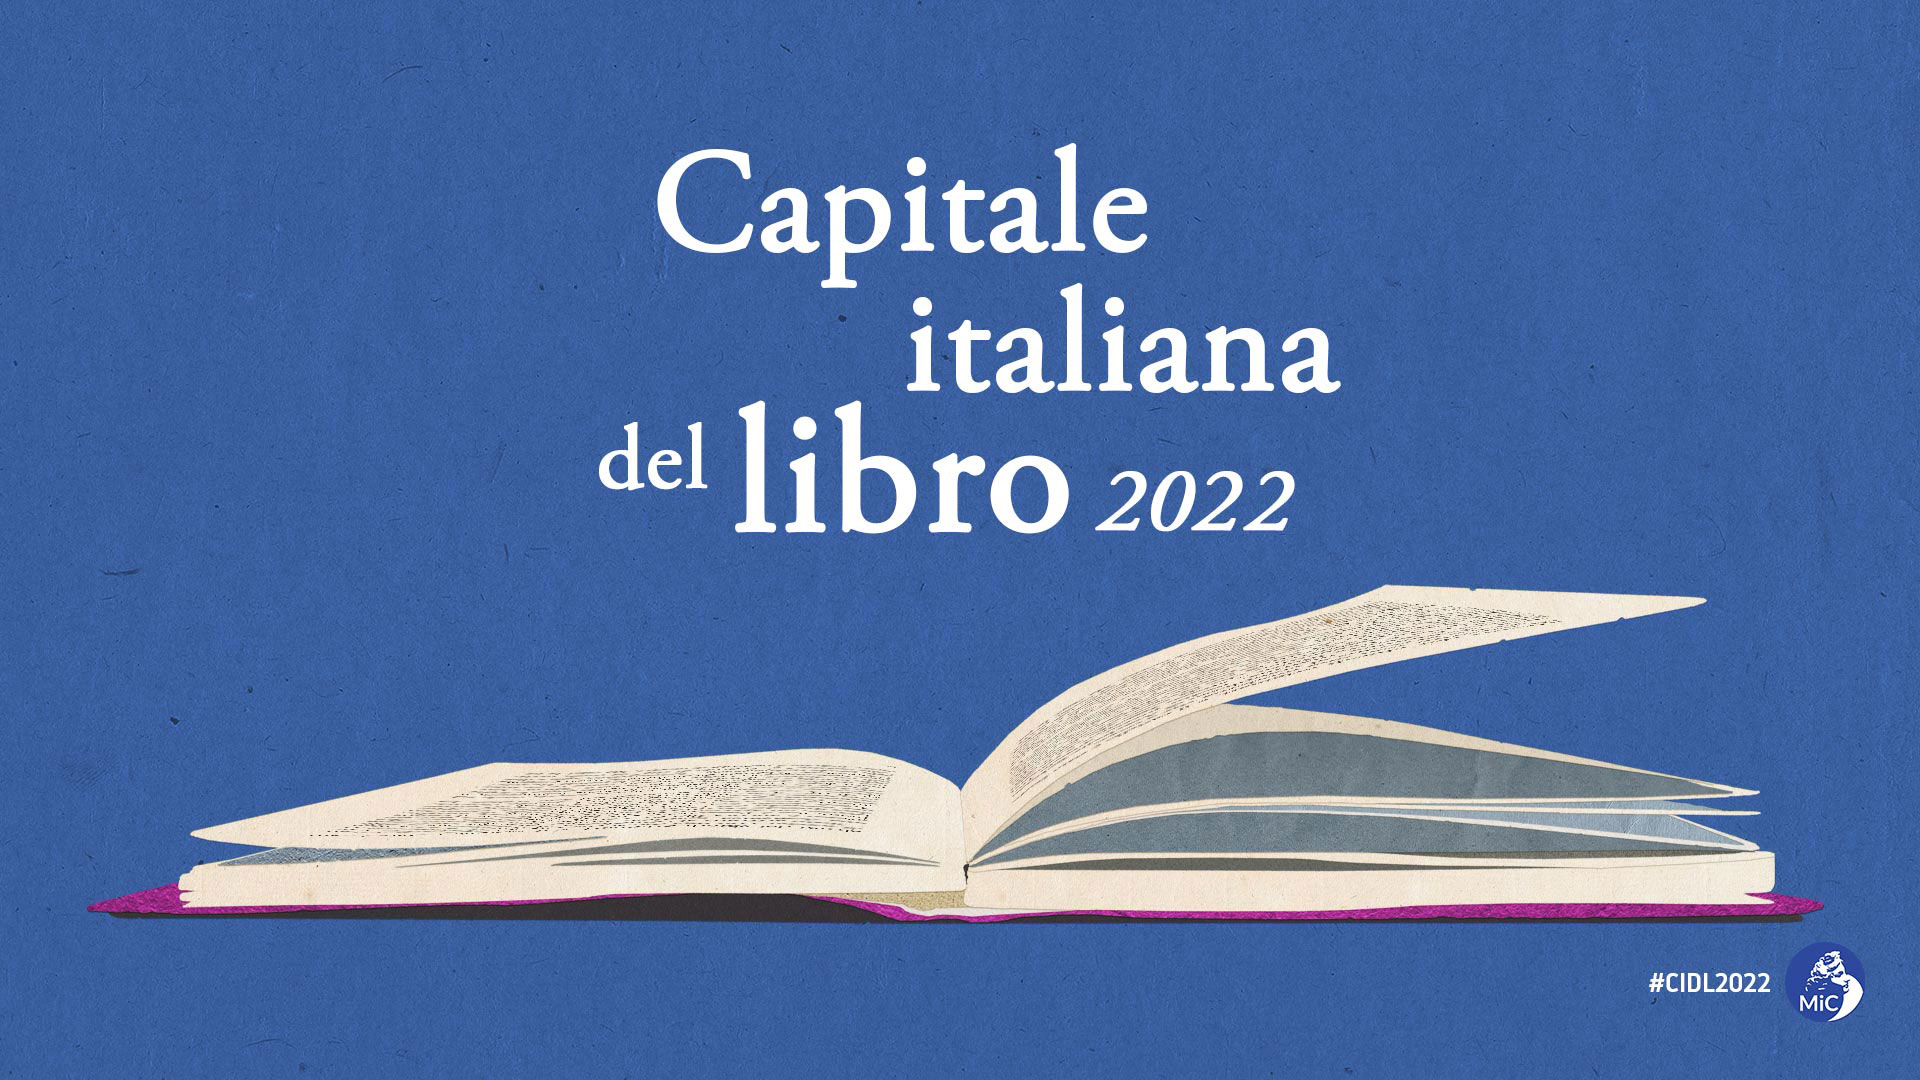 Capitale del Libro 2022: MiC, selezionate le otto città finaliste